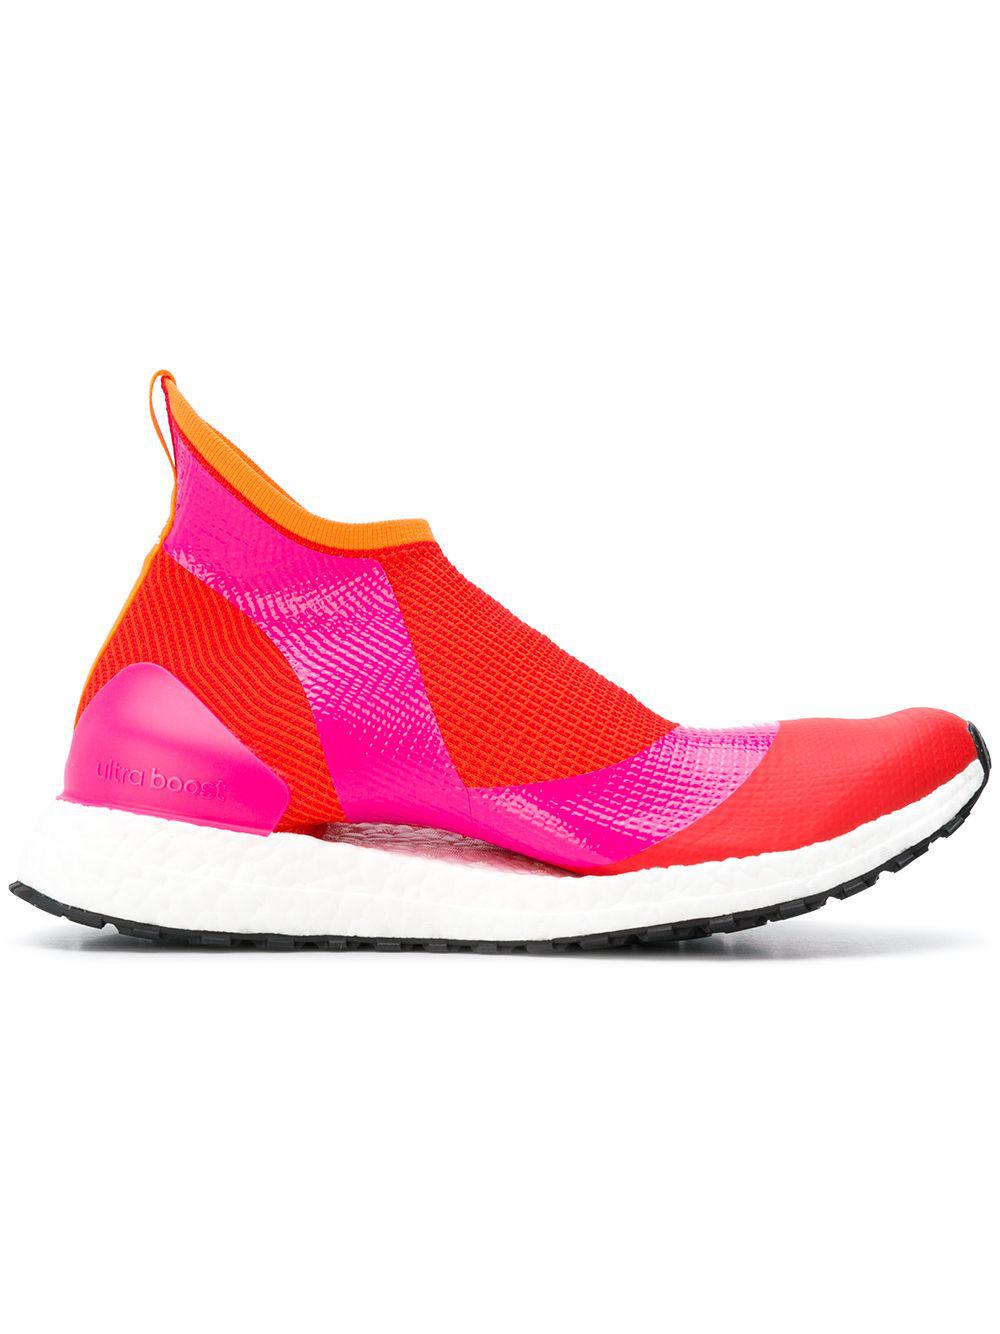 adidas By McCartney Ultraboost X Atr44 Pink Women's Sneakers - Lyst